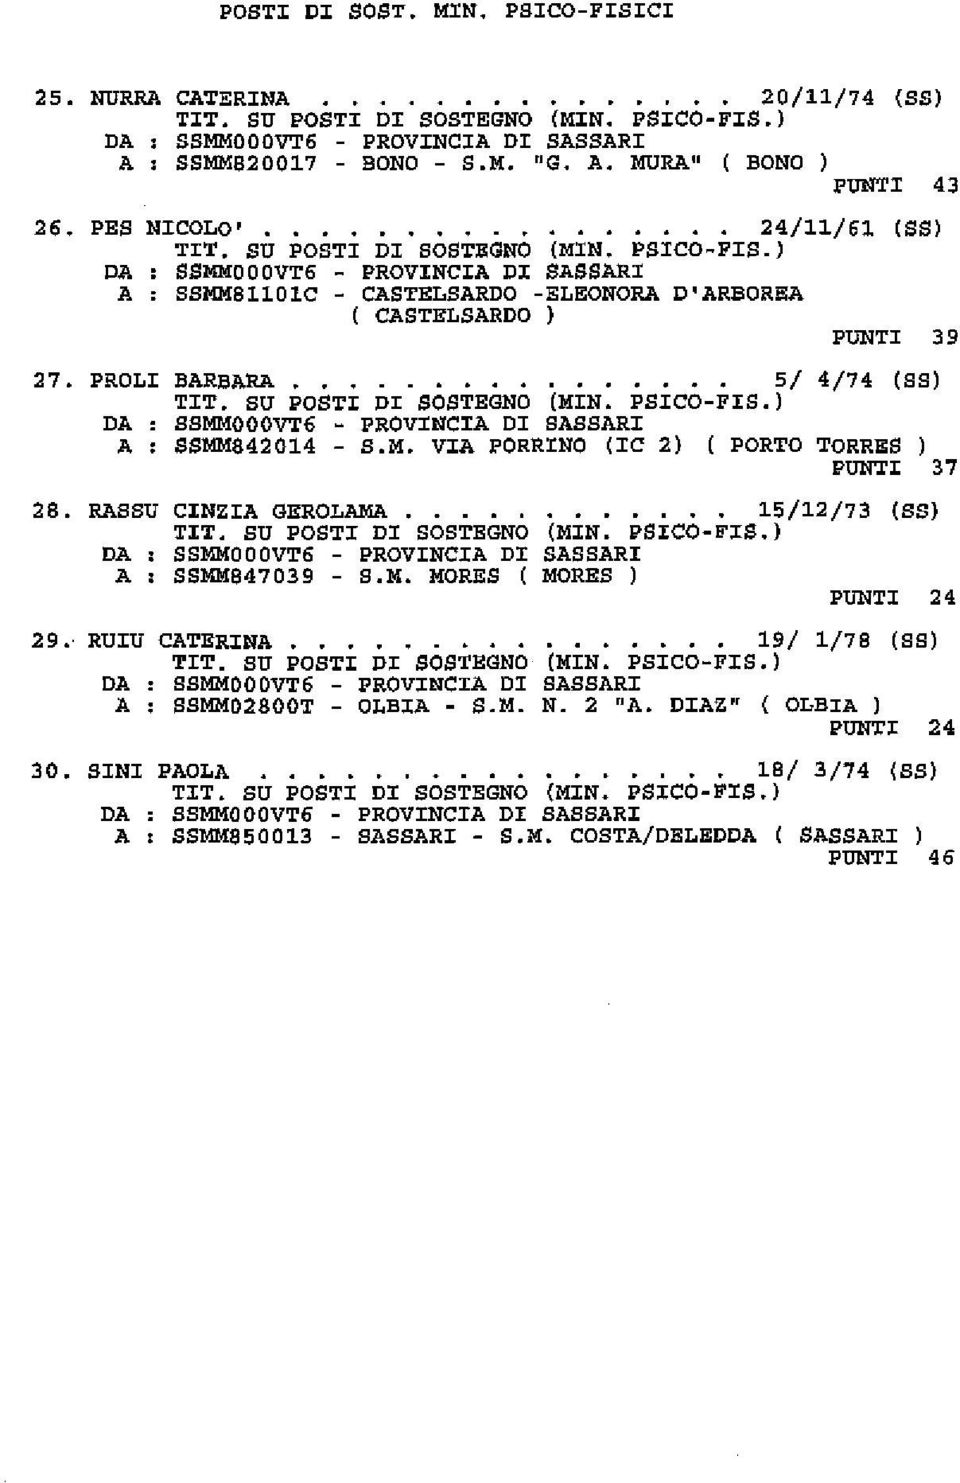 .. 5/ 4/74 (SS) DA SSMMOOOVT6 PROVINCIA DI SASSARI A : SSMM842014 - S.M. VIA PORRINO (IC 2) ( PORTO TORRES ) PUNTI 37 28. RASSU DA A CINZIA GEROLAMA.